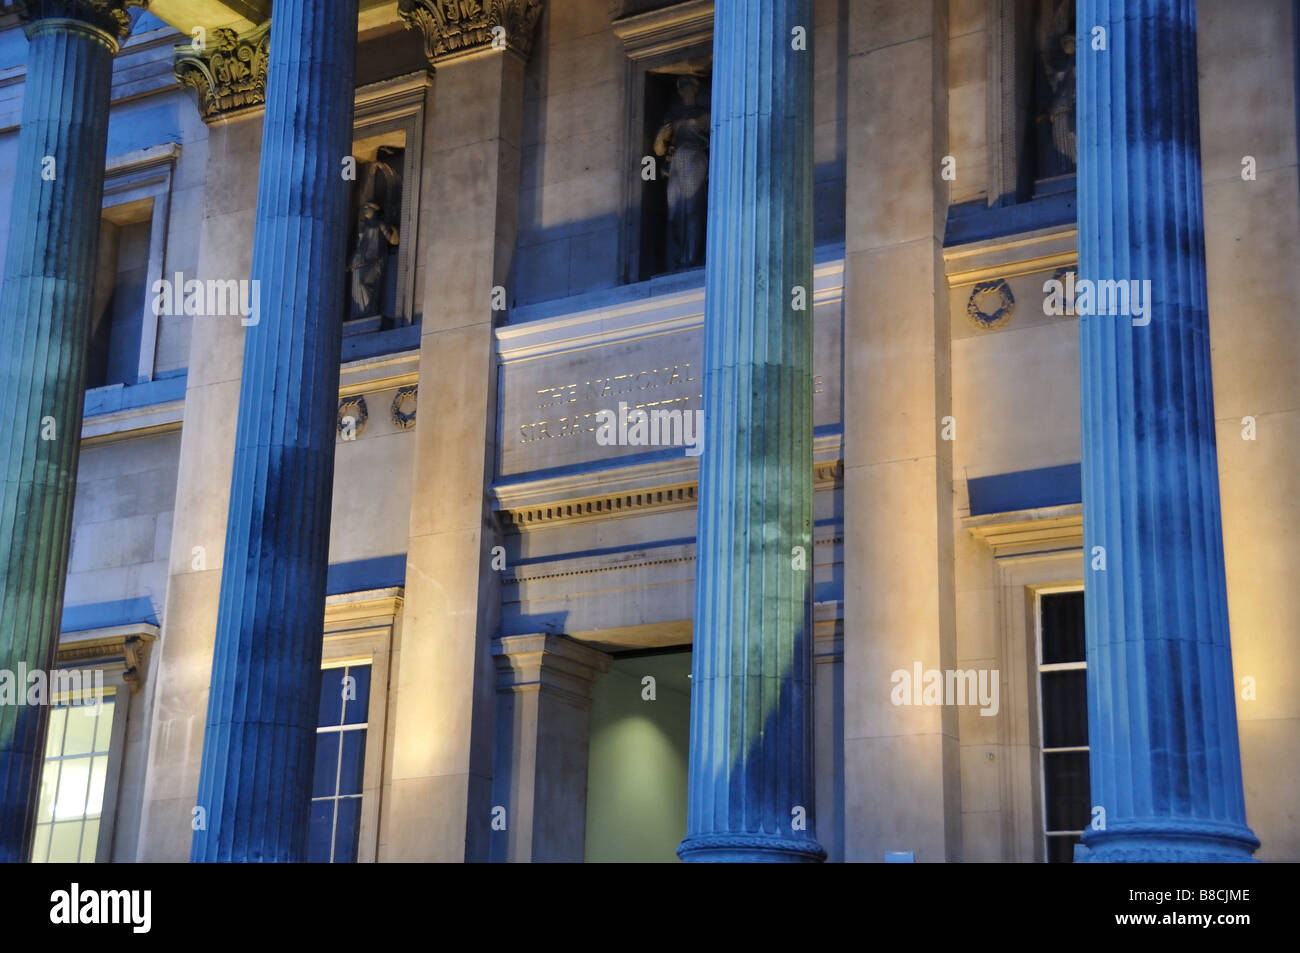 Le «sir Paul Getty' d'entrée de la Galerie nationale de nuit, Londres, Angleterre. Banque D'Images